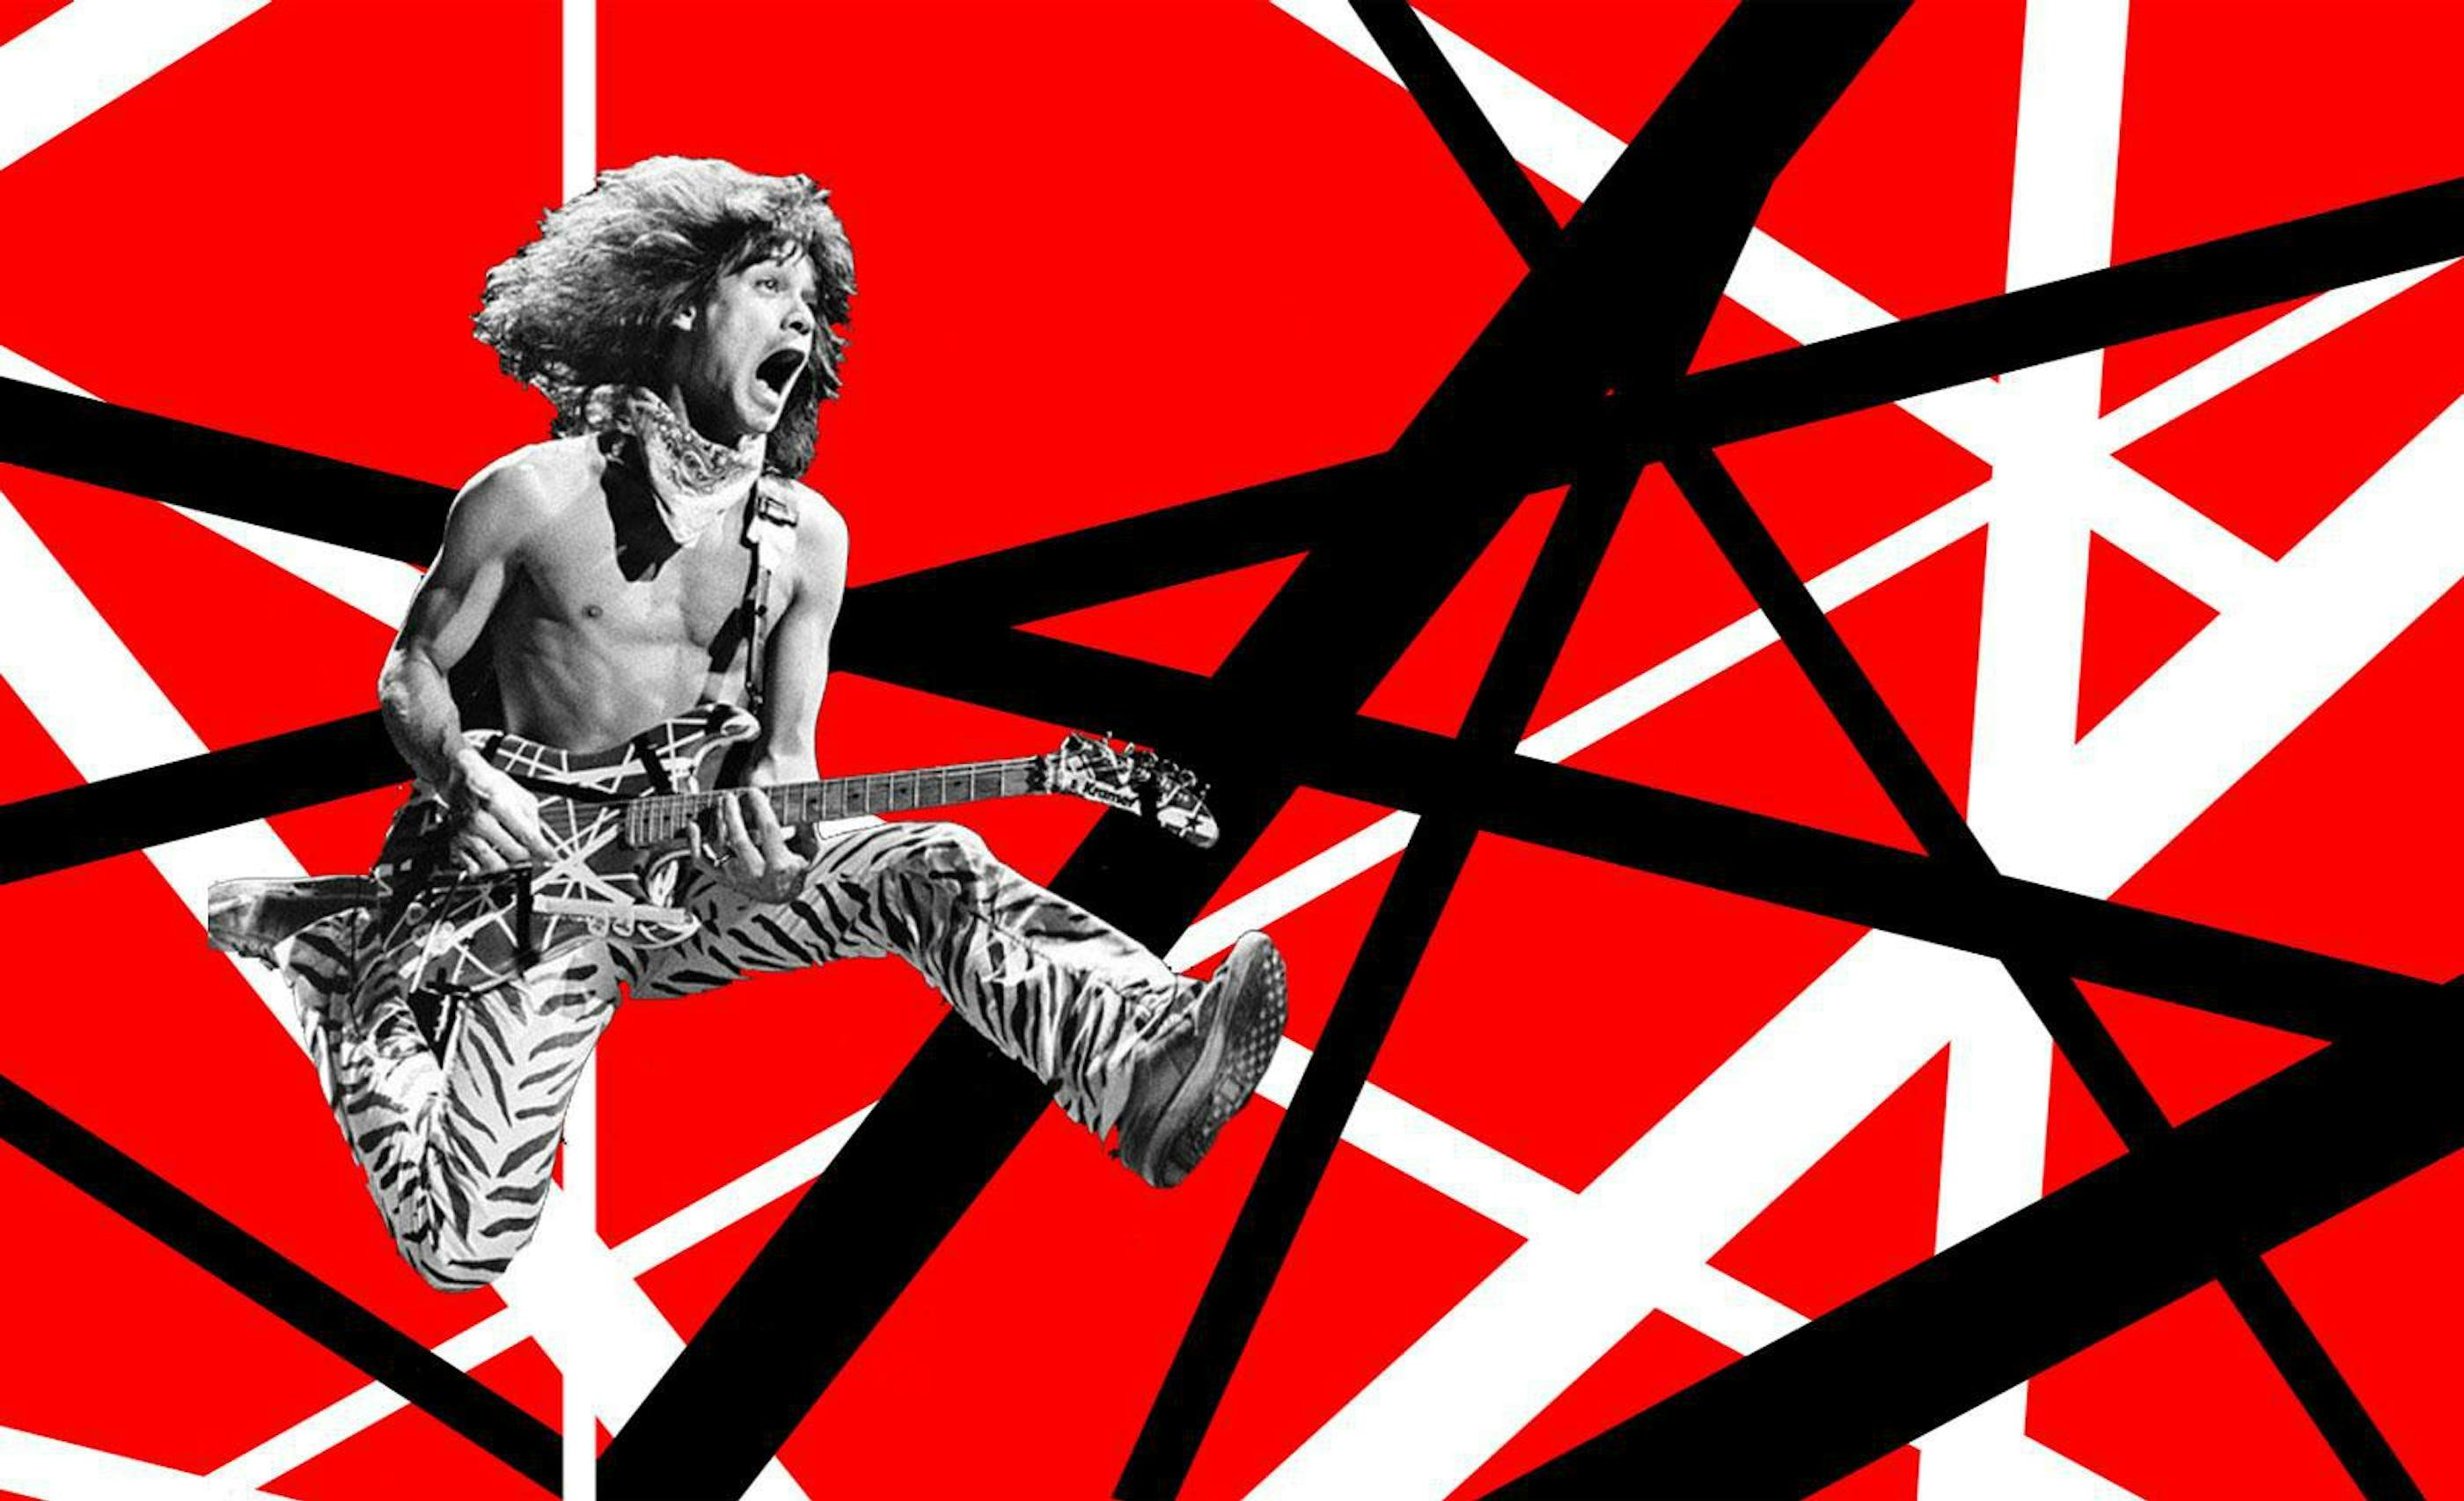 New Eddie Van Halen Merch!